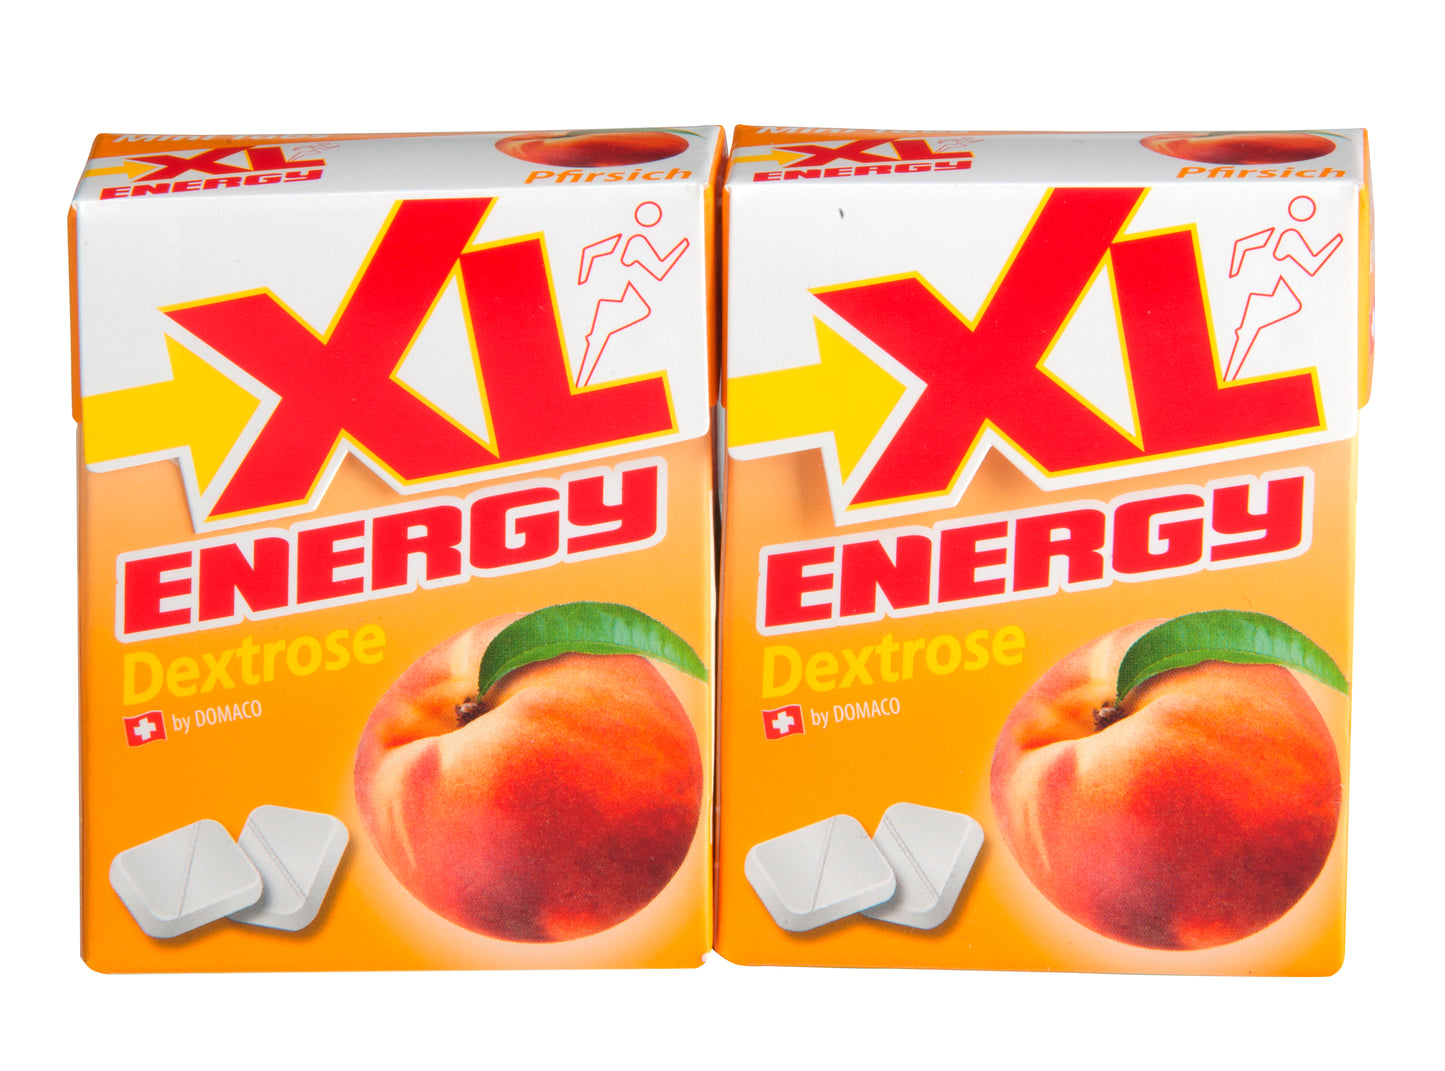 XL-Energy Pfirsich Duopack 2x50g